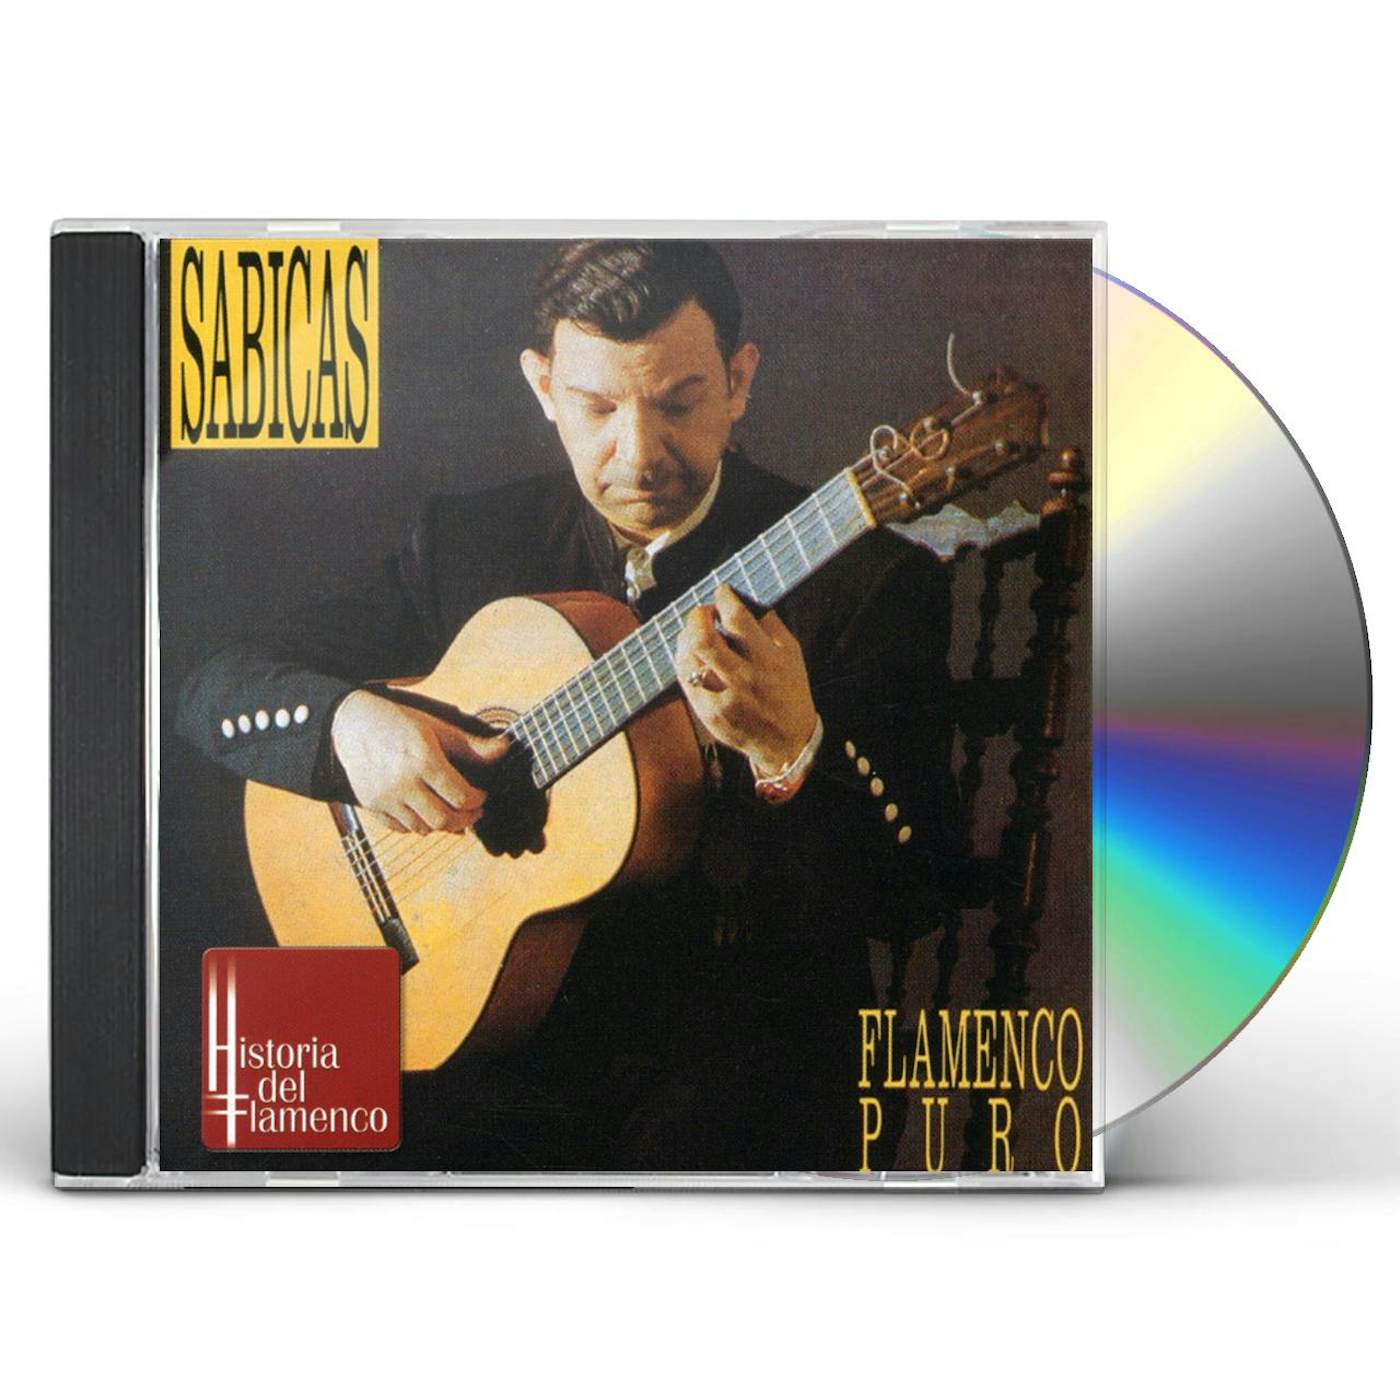 Sabicas FLAMENCO PURO CD